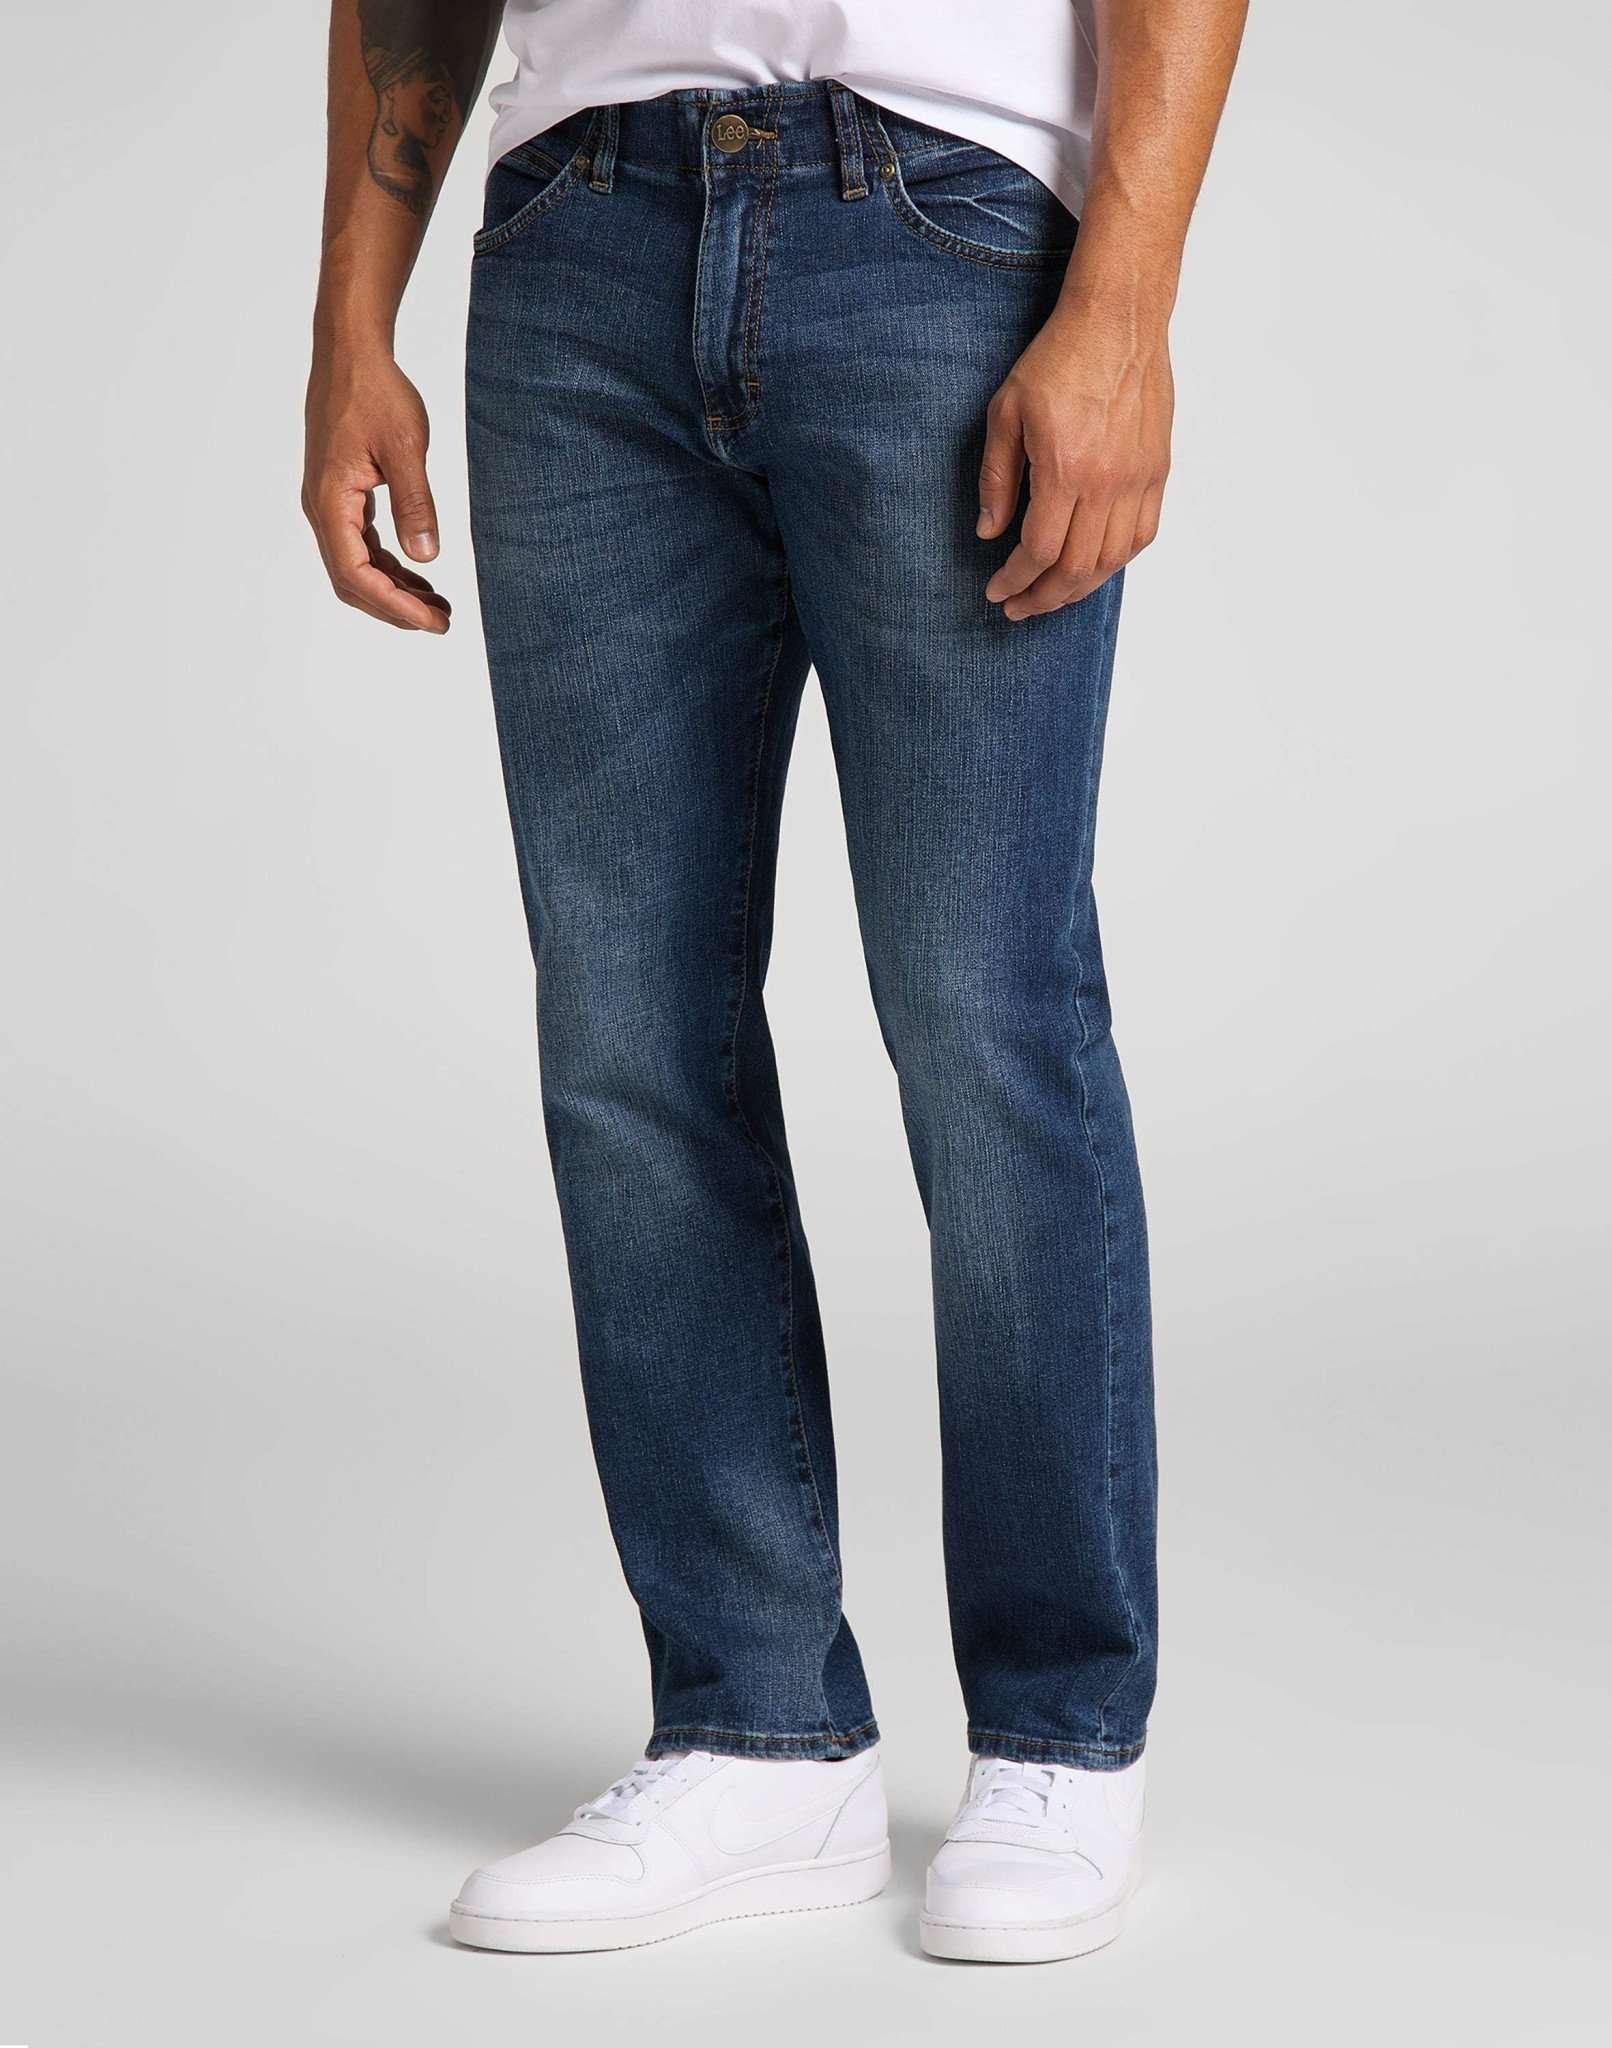 Jeans Straight Leg Xm Herren Blau Denim L34/W38 von Lee